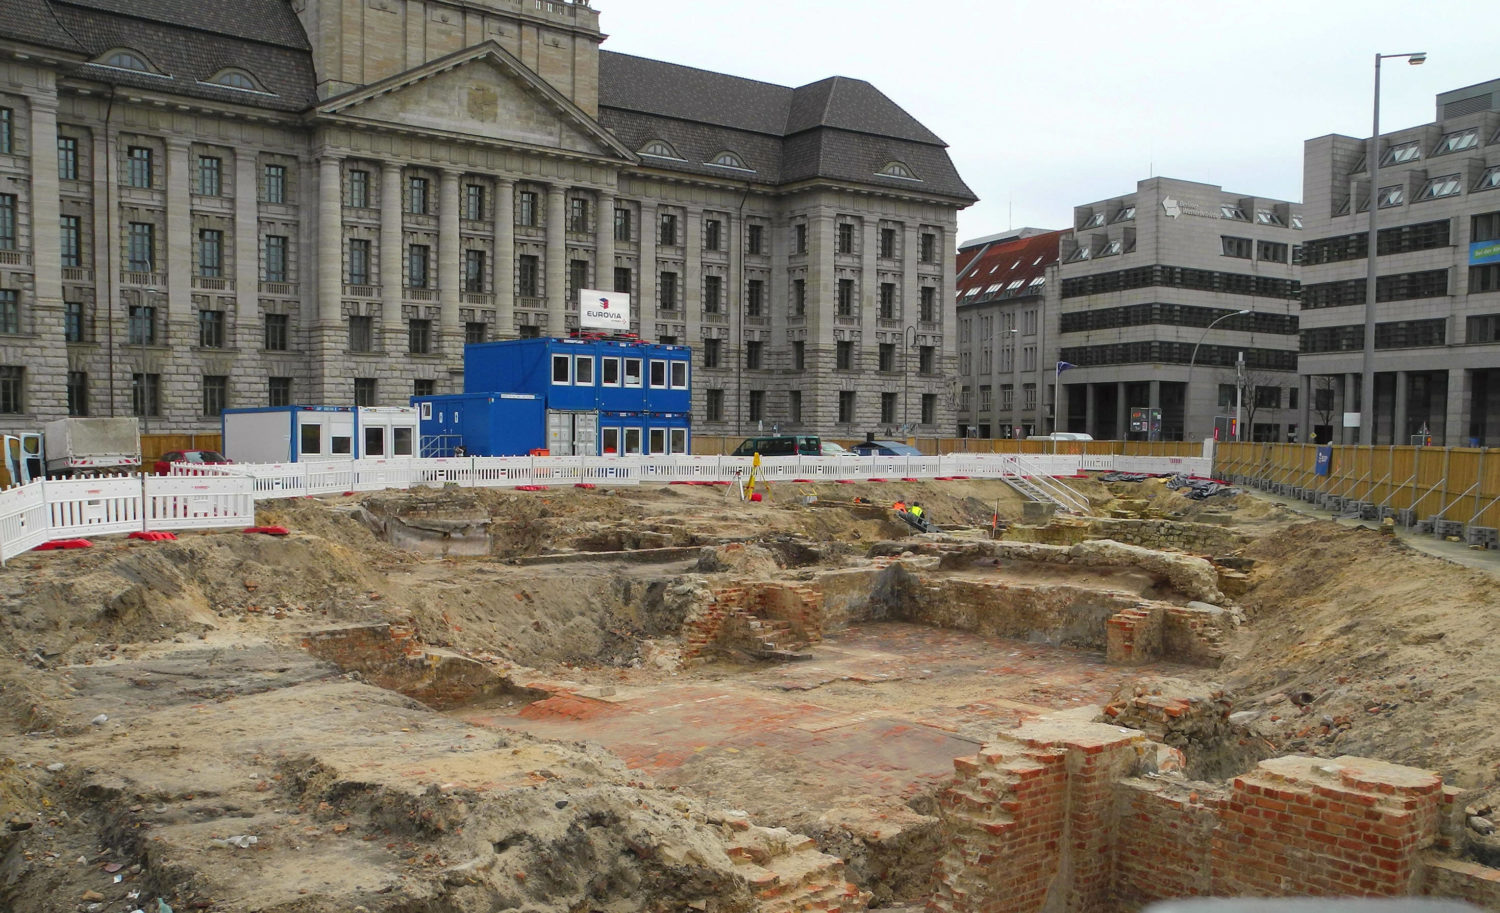 Während der Umgestaltung des Molkenmarktes in Mitte wurden archäologische Grabungen unternommen, Februar 2020. Foto: Imago/PEMAX